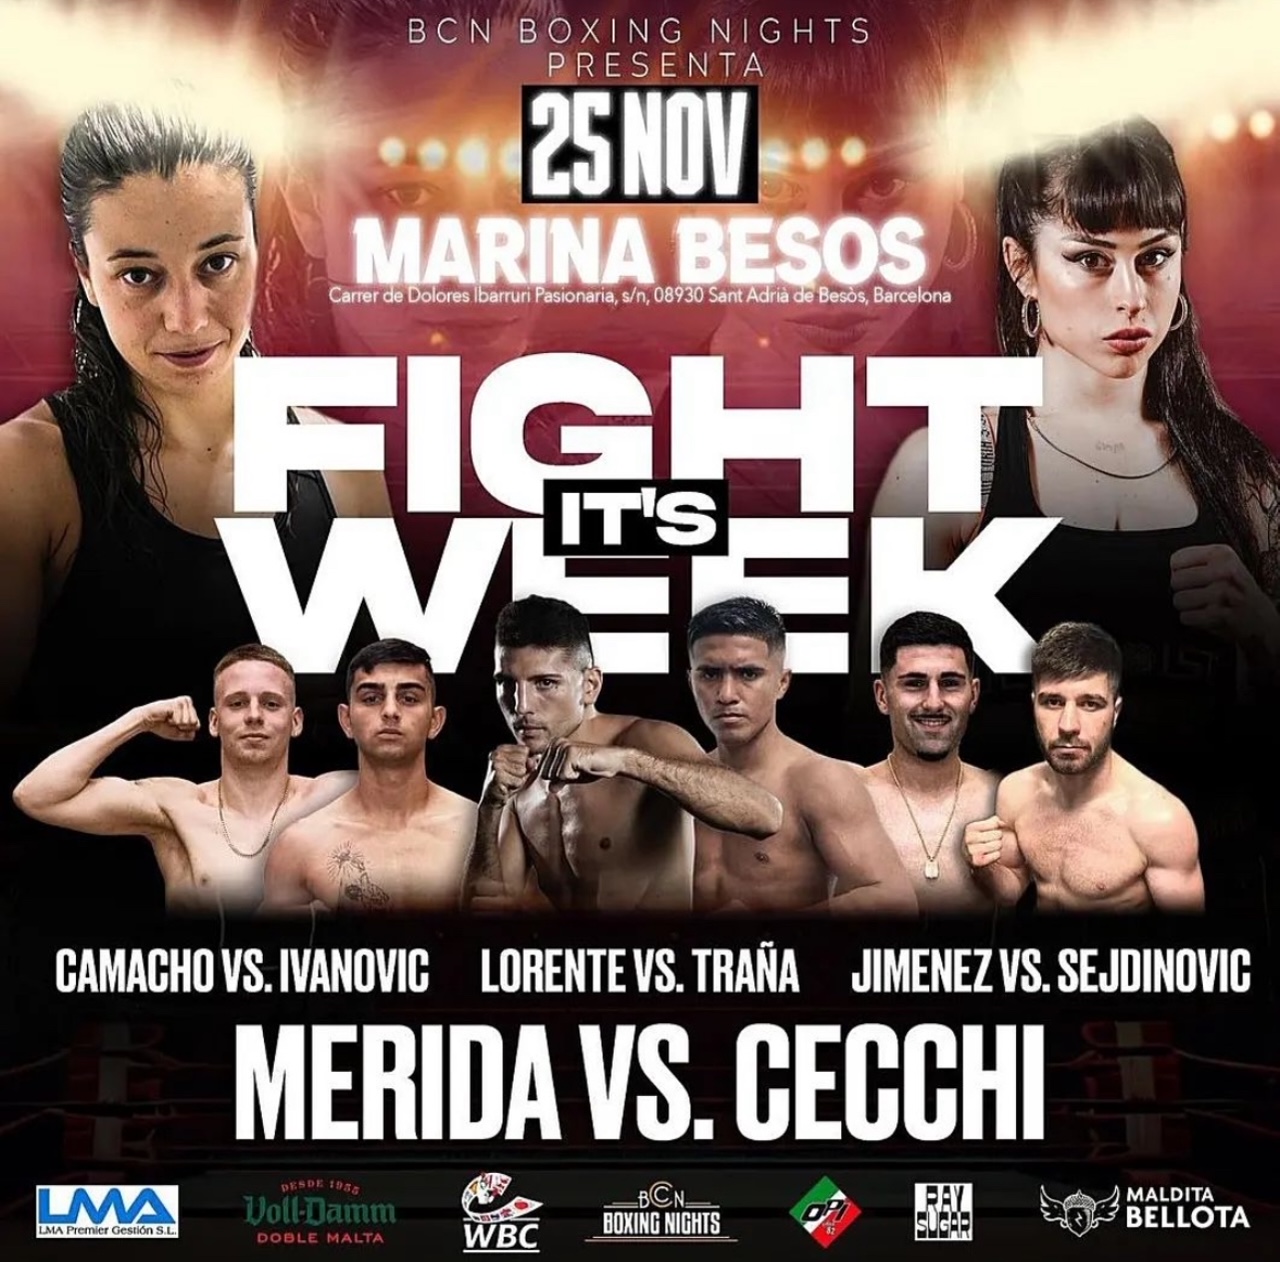 FIGHT WEEK: Sabato 25 Novembre Maria Cecchi a Barcellona per il Titolo Mediterraneo WBC Supergallo